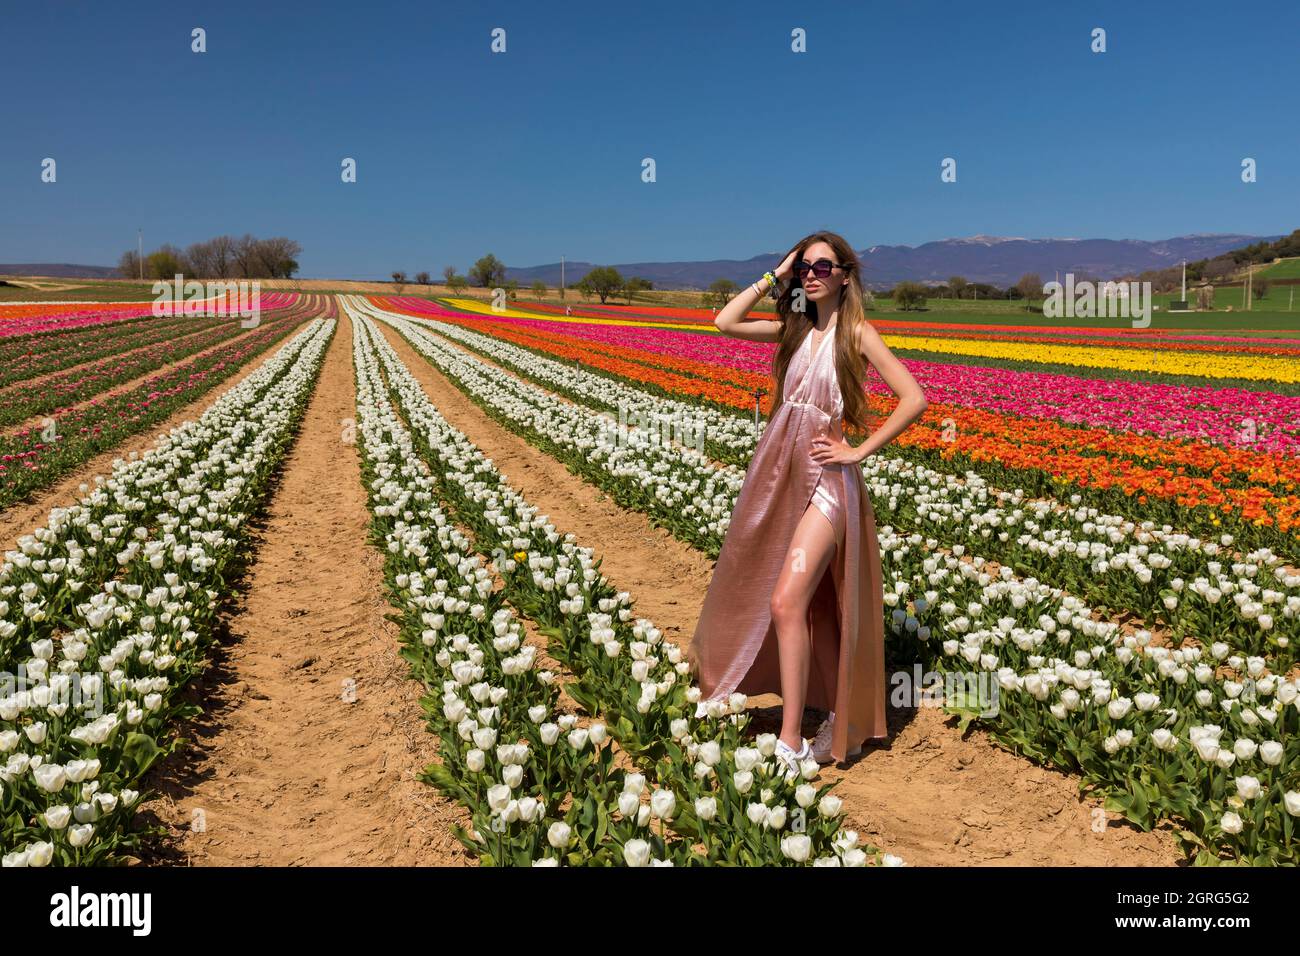 France, Alpes de haute Provence, la Brillanne, champ de tulipes Banque D'Images